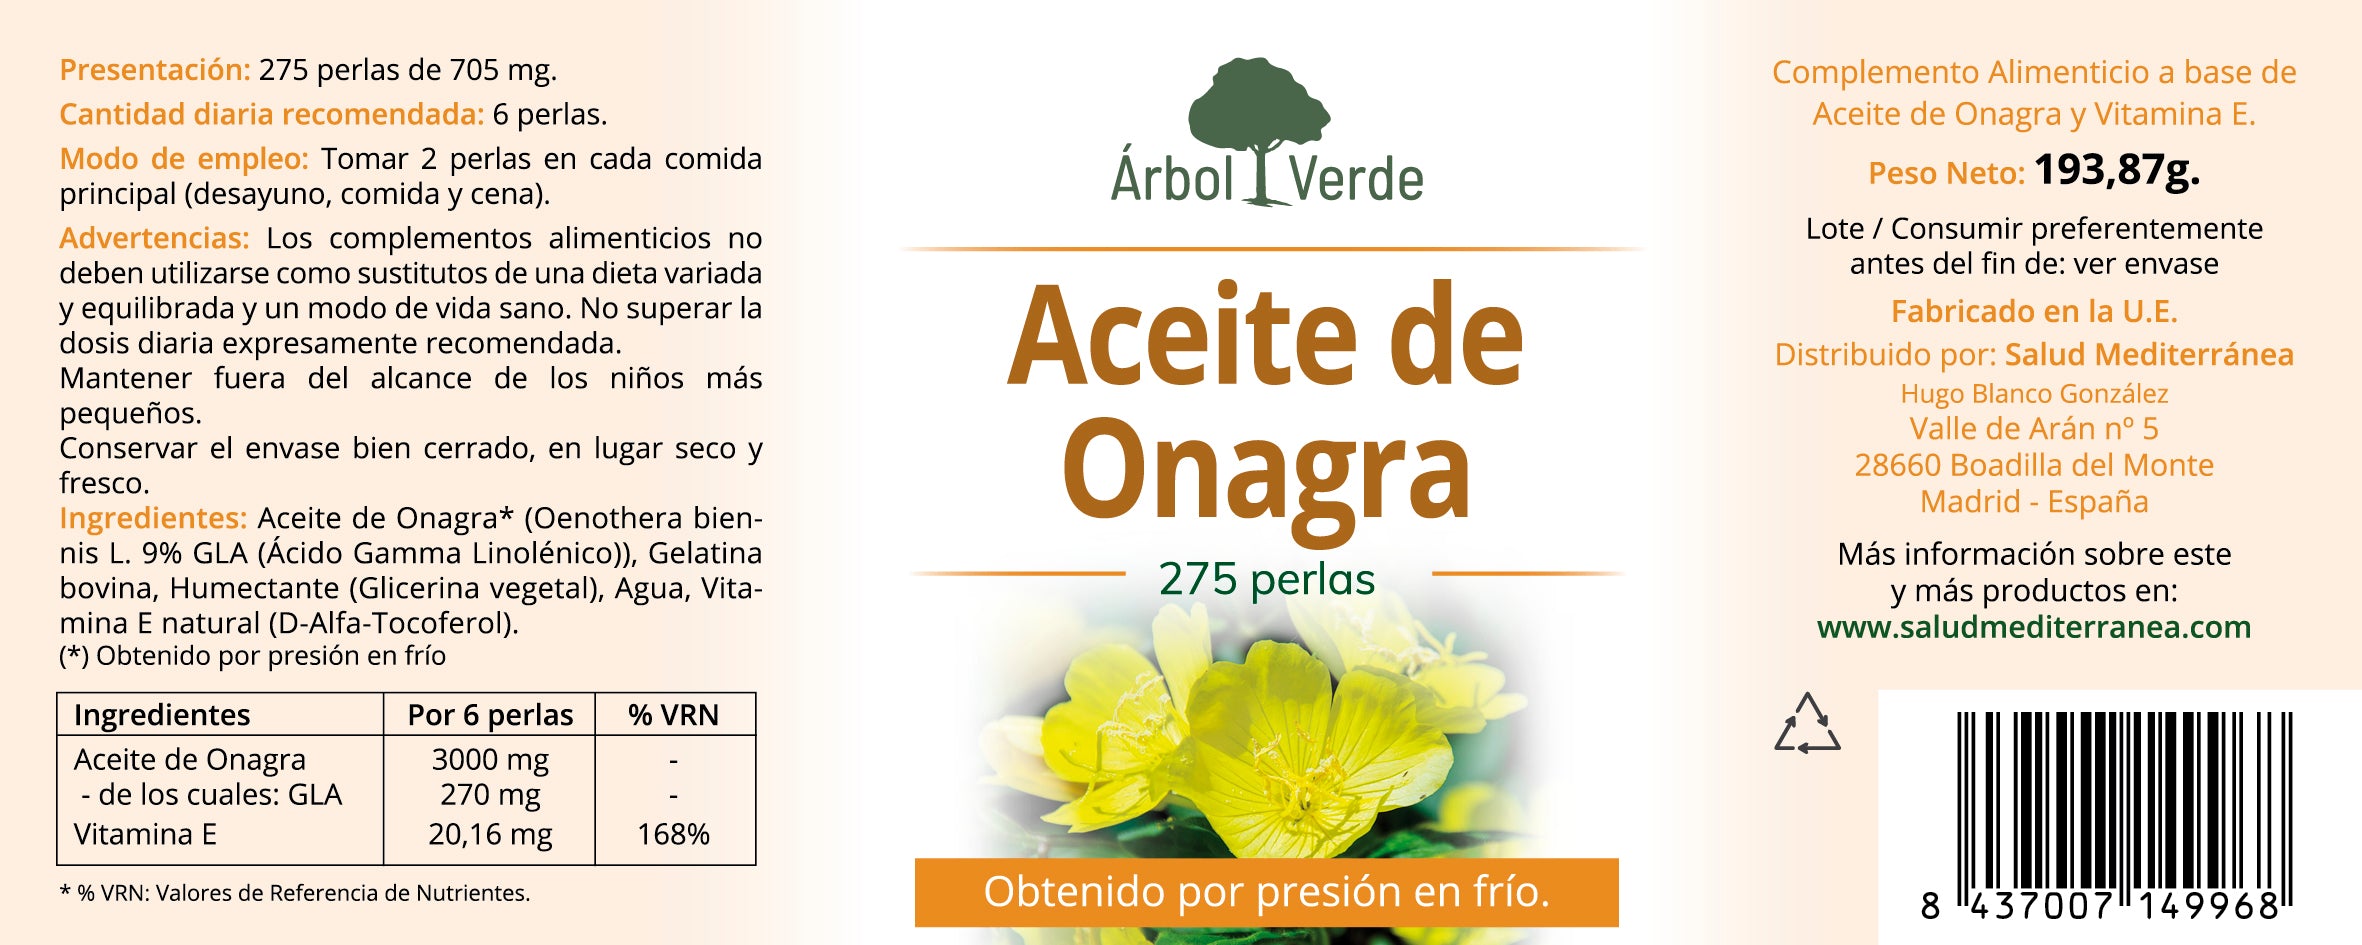 Etiqueta Aceite de Onagra - 275 Perlas. Árbol Verde. Herbolario Salud Mediterranea